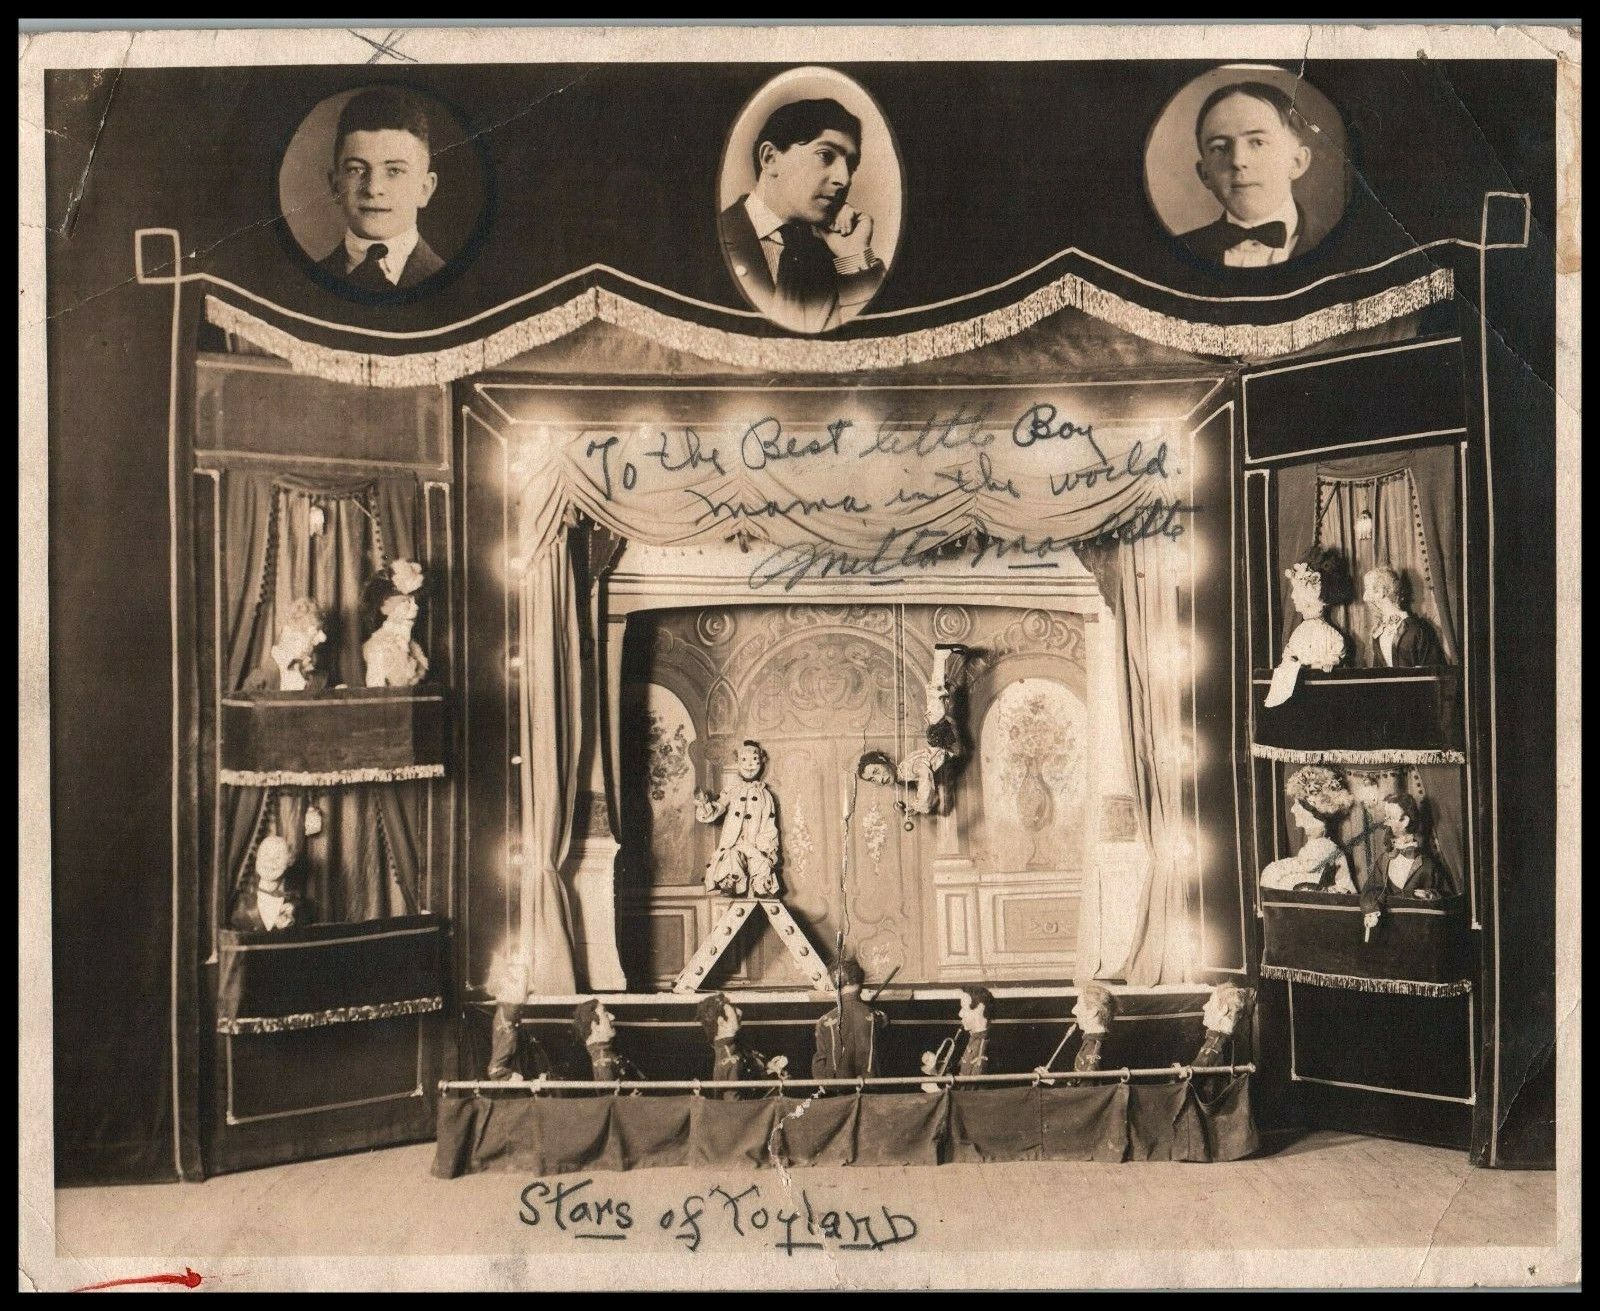 MILTON Marlette's Marionettes TOYLAND SIGNED AUTOGRAPH PORTRAIT 1930s Photo 551